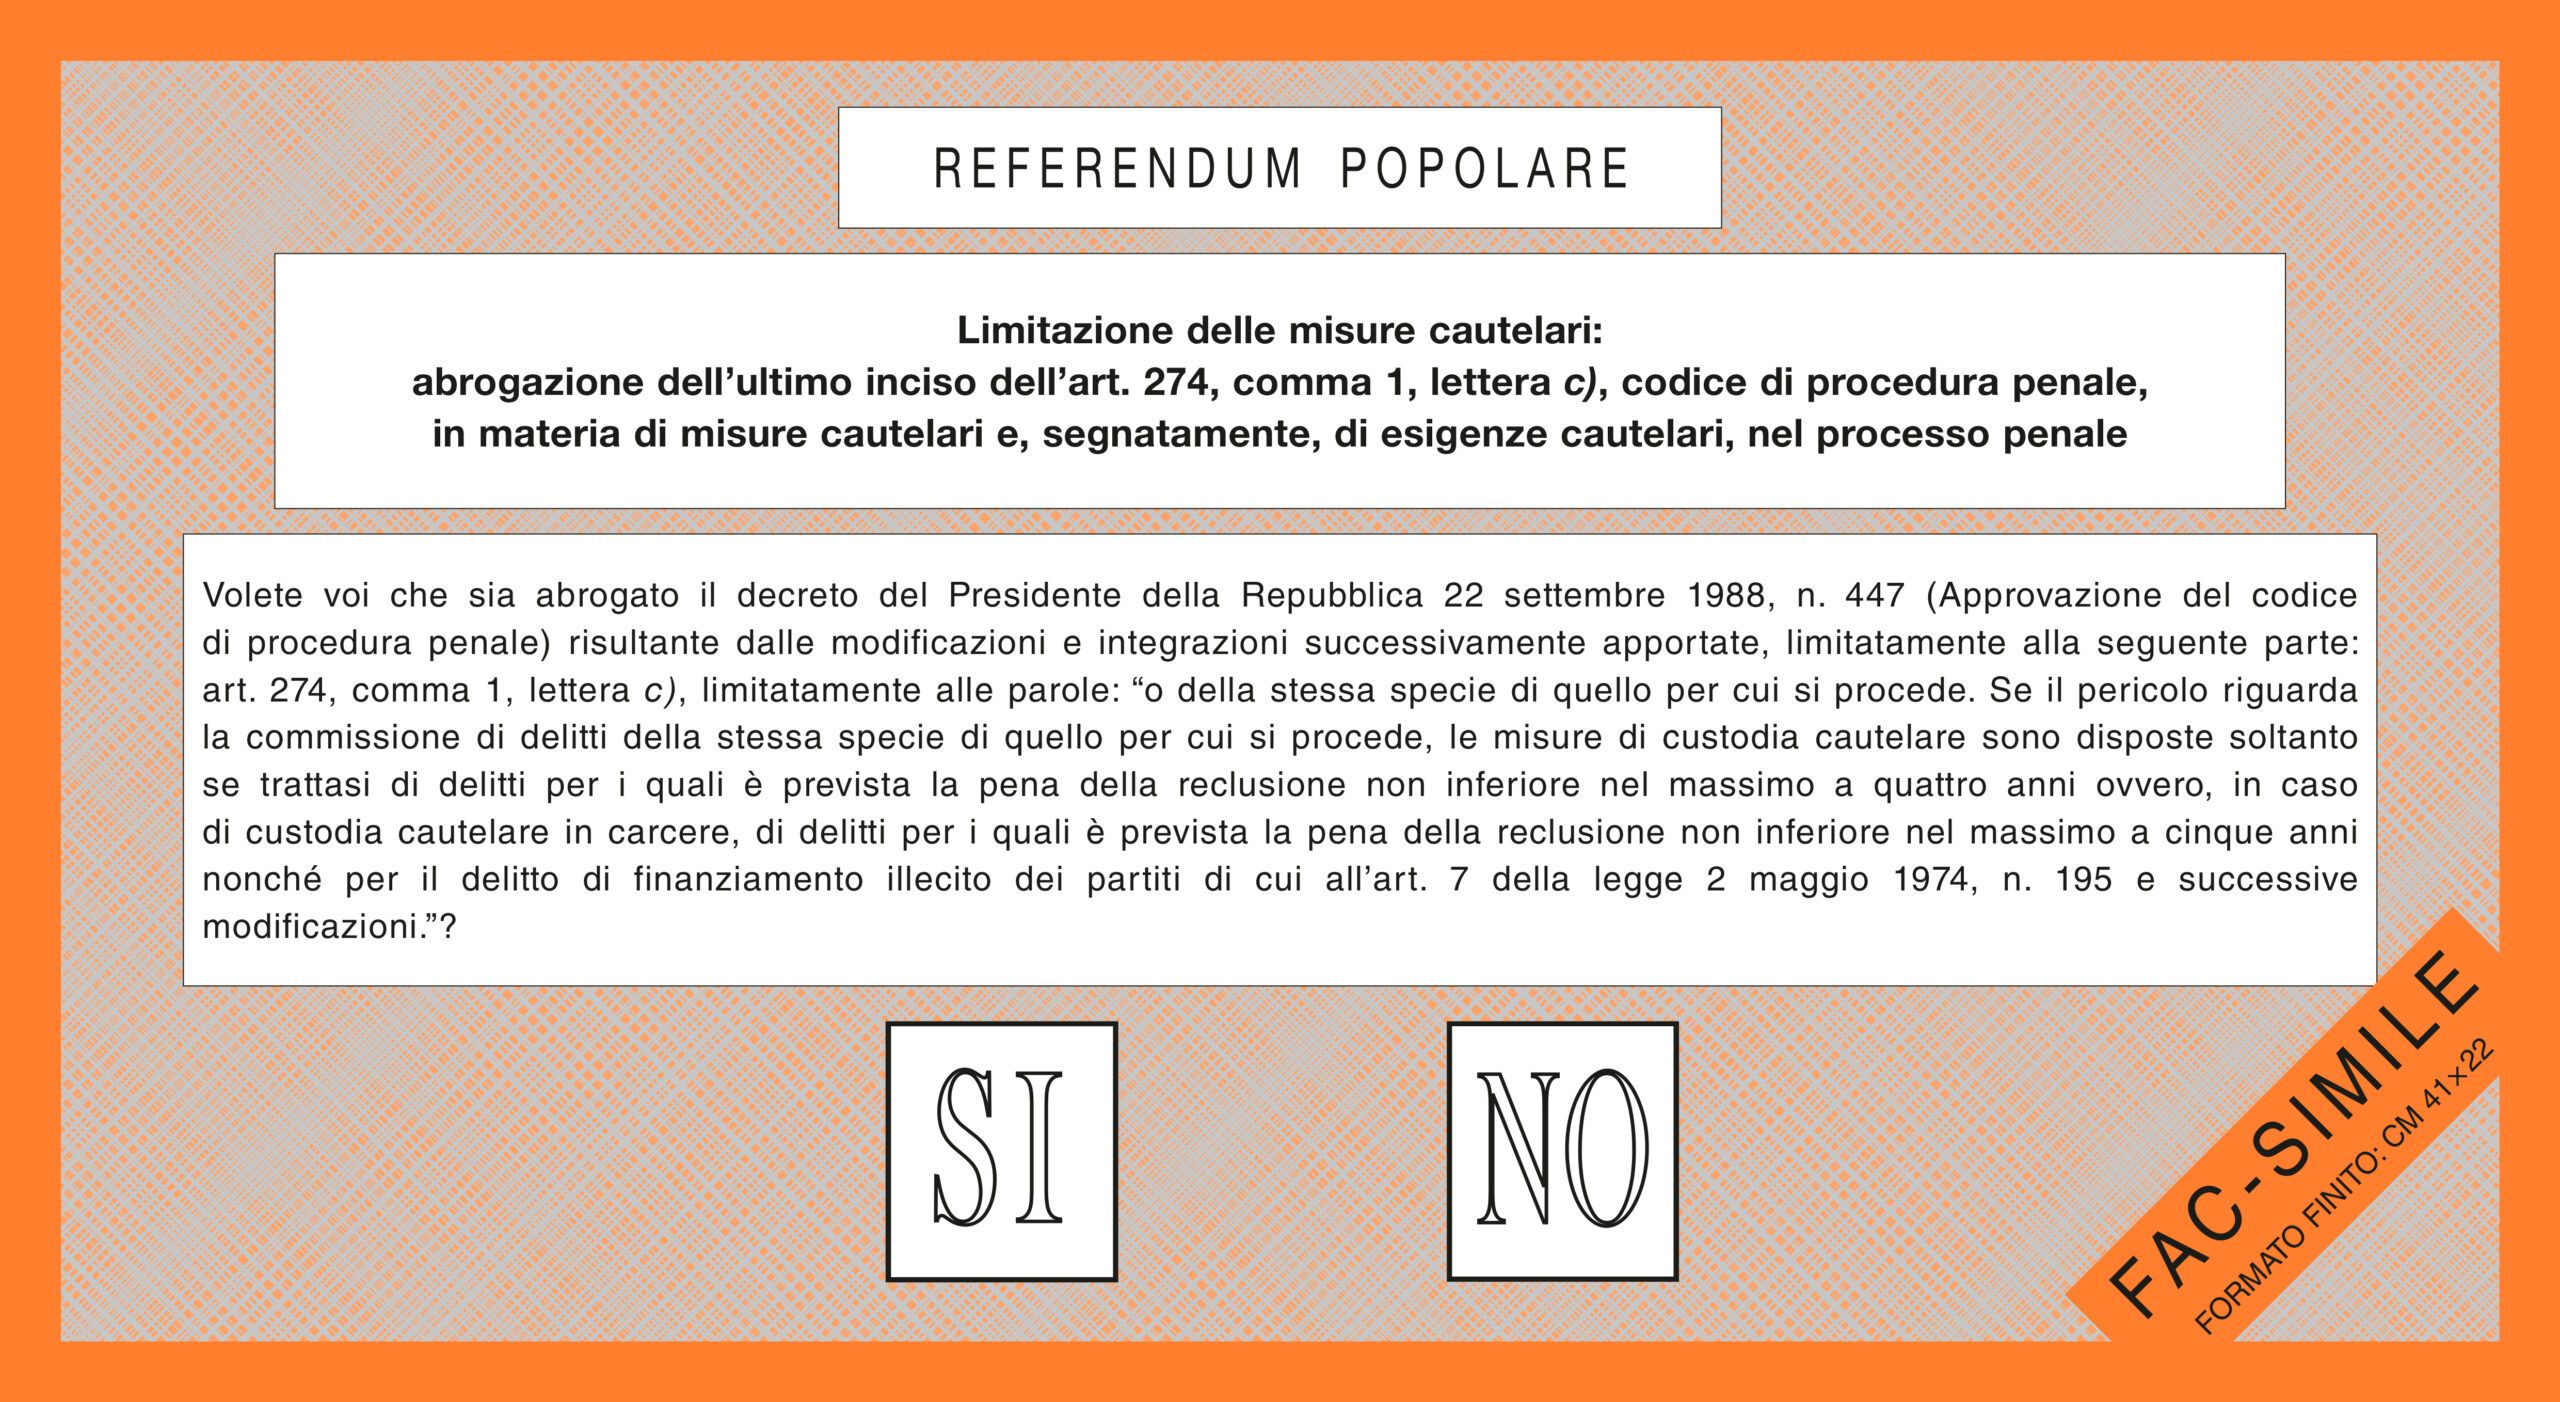 Referendum 12 giugno 2022 fac simile scheda